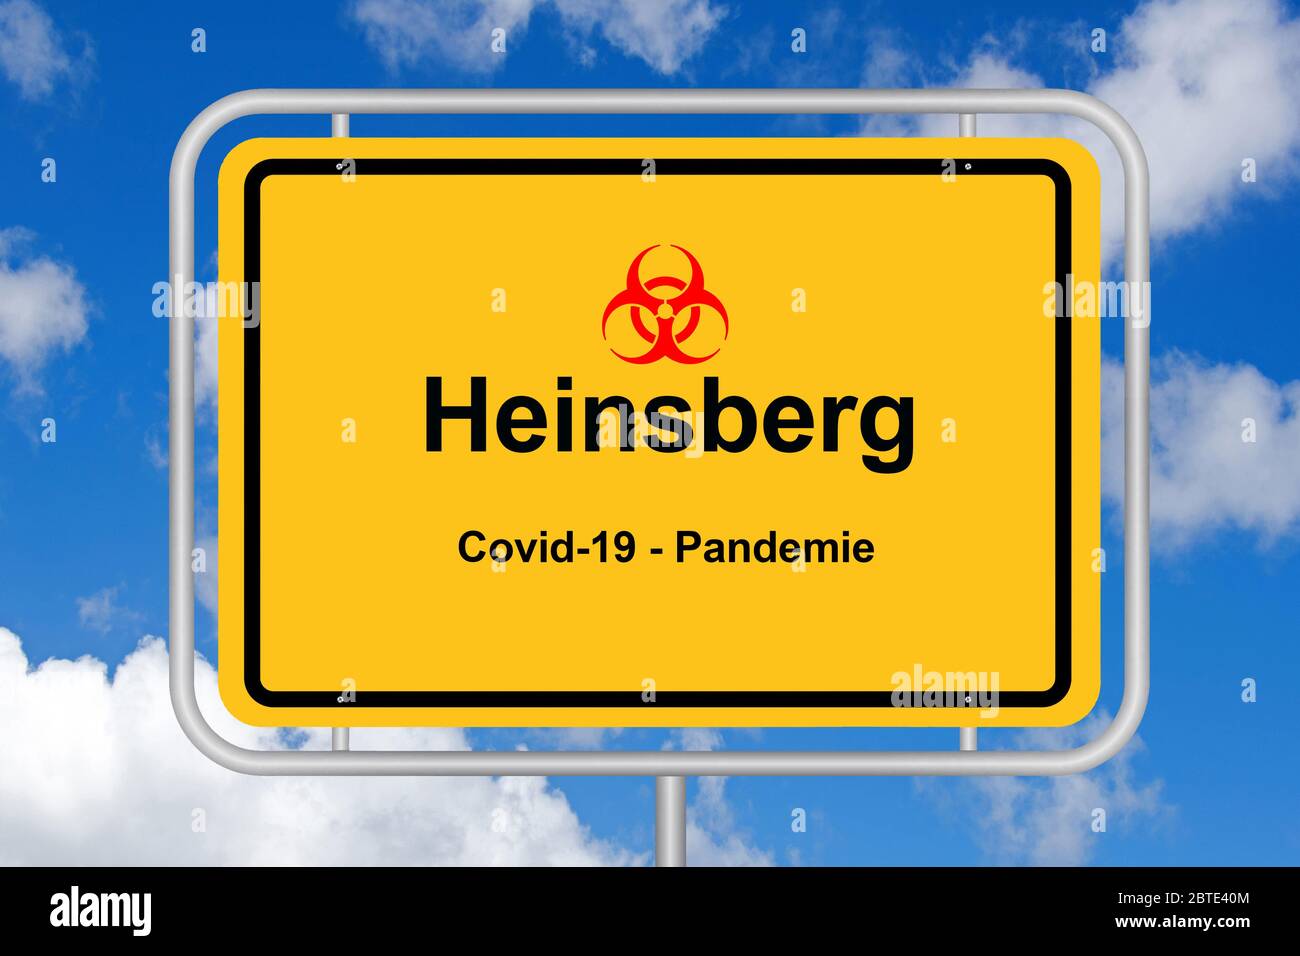 Ville signe de Heinsberg, COVID19, pandémie, Allemagne Banque D'Images